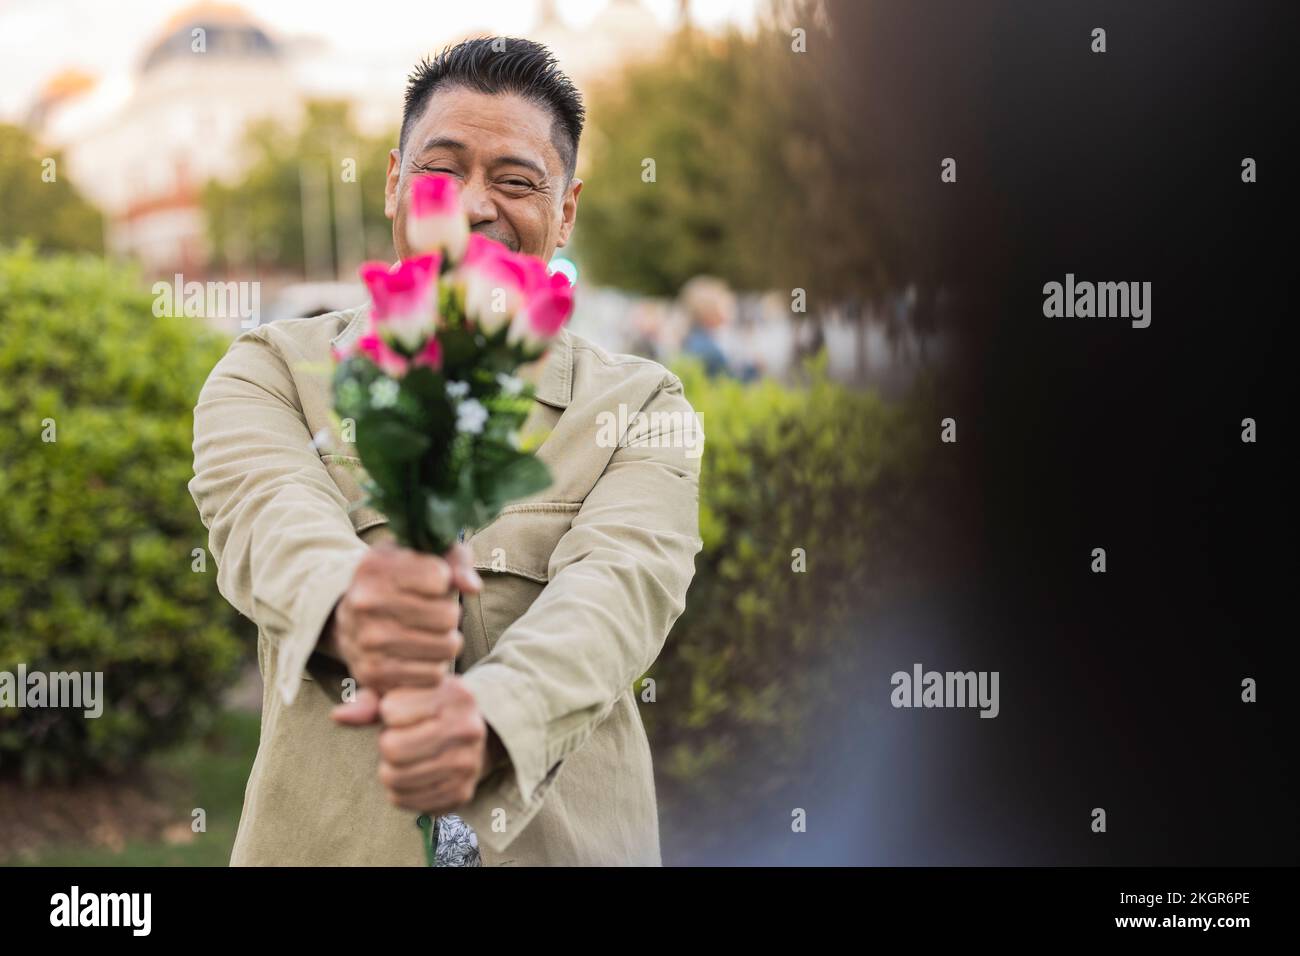 Ein lächelnder, reifer Mann, der am Valentinstag im Park Blumen zeigt Stockfoto